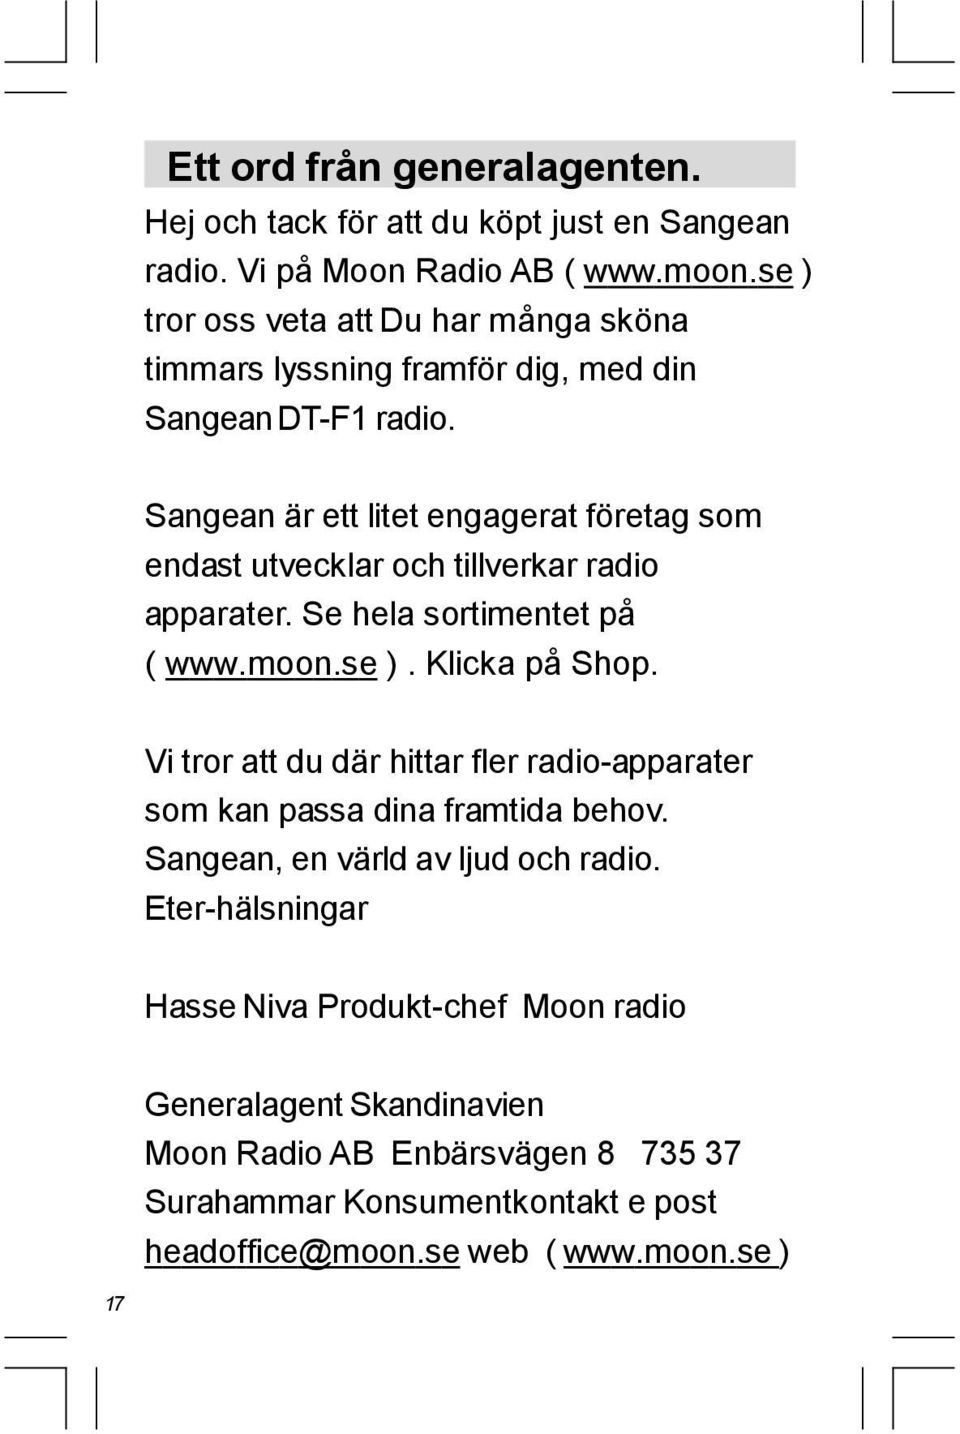 Sangean är ett litet engagerat företag som endast utvecklar och tillverkar radio apparater. Se hela sortimentet på ( www.moon.se ). Klicka på Shop.